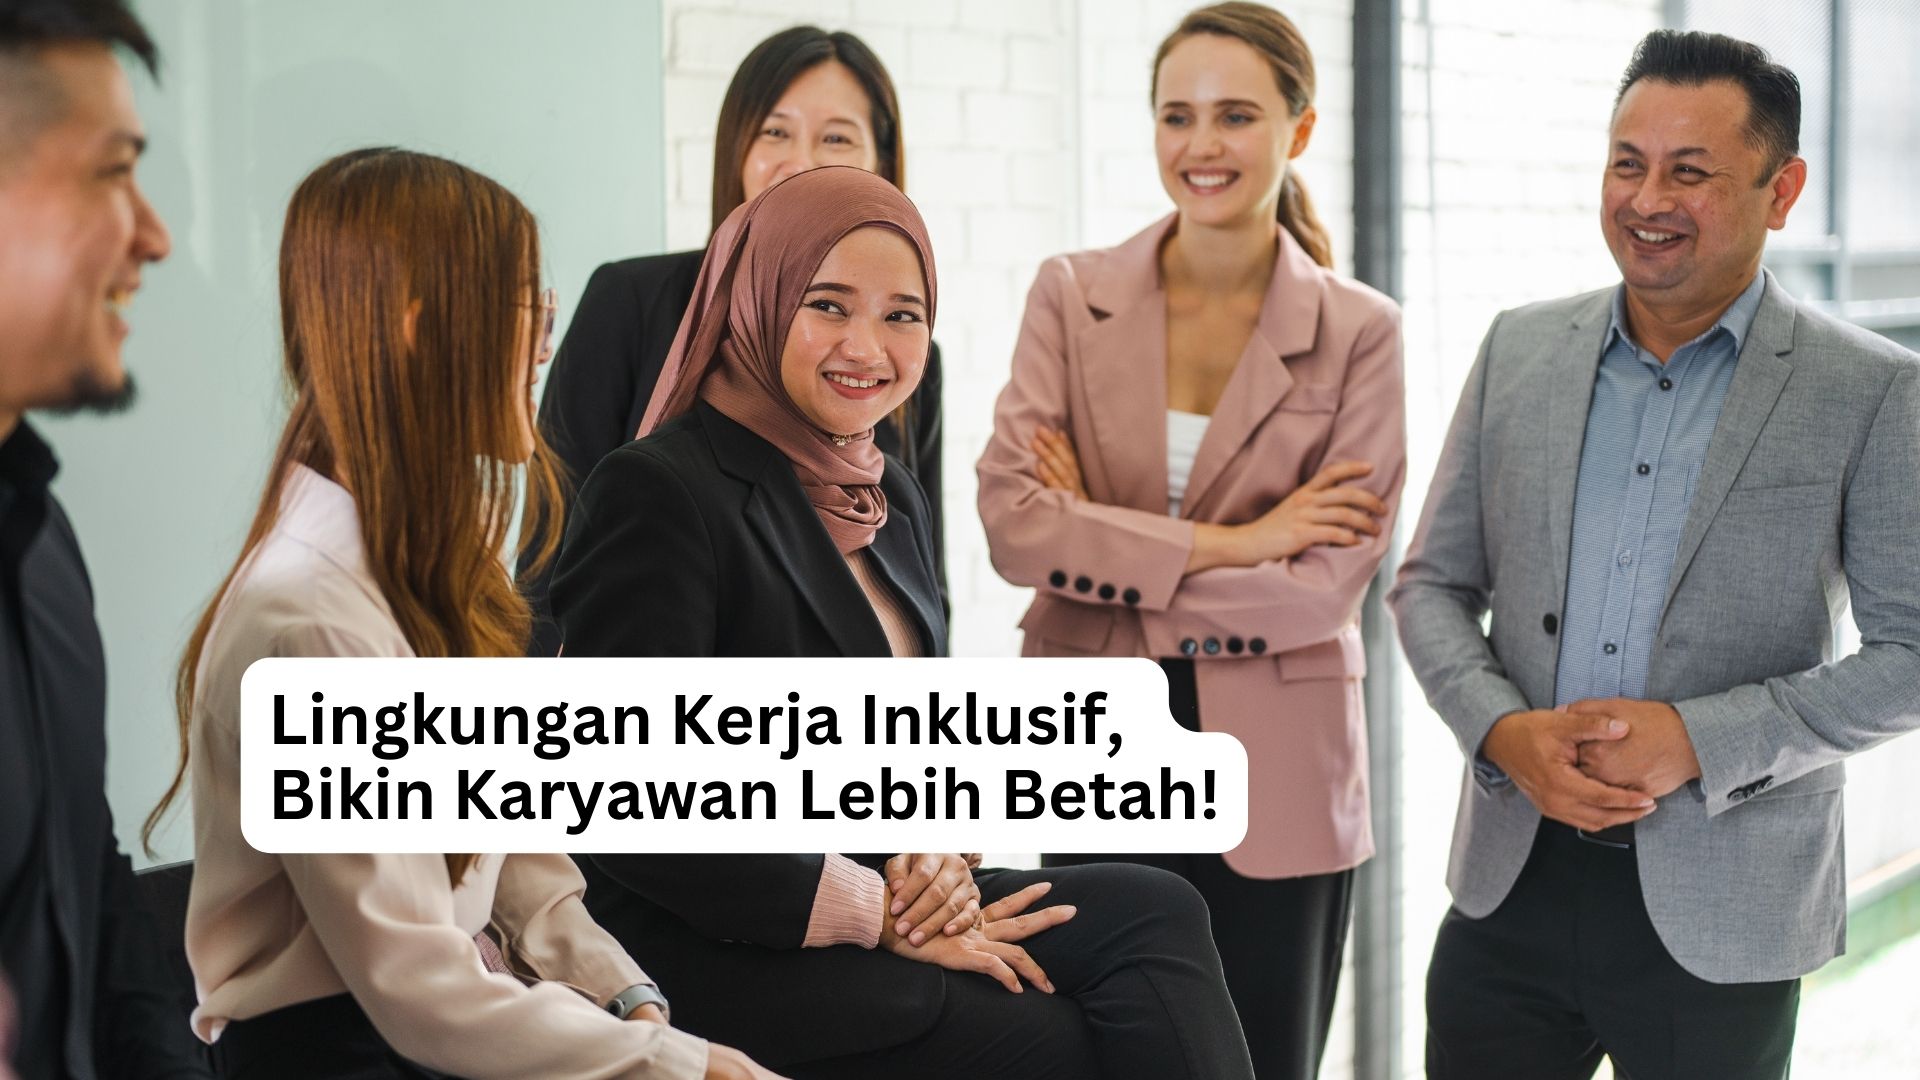 You are currently viewing Lingkungan Kerja Inklusif, Bikin Karyawan Lebih Betah!